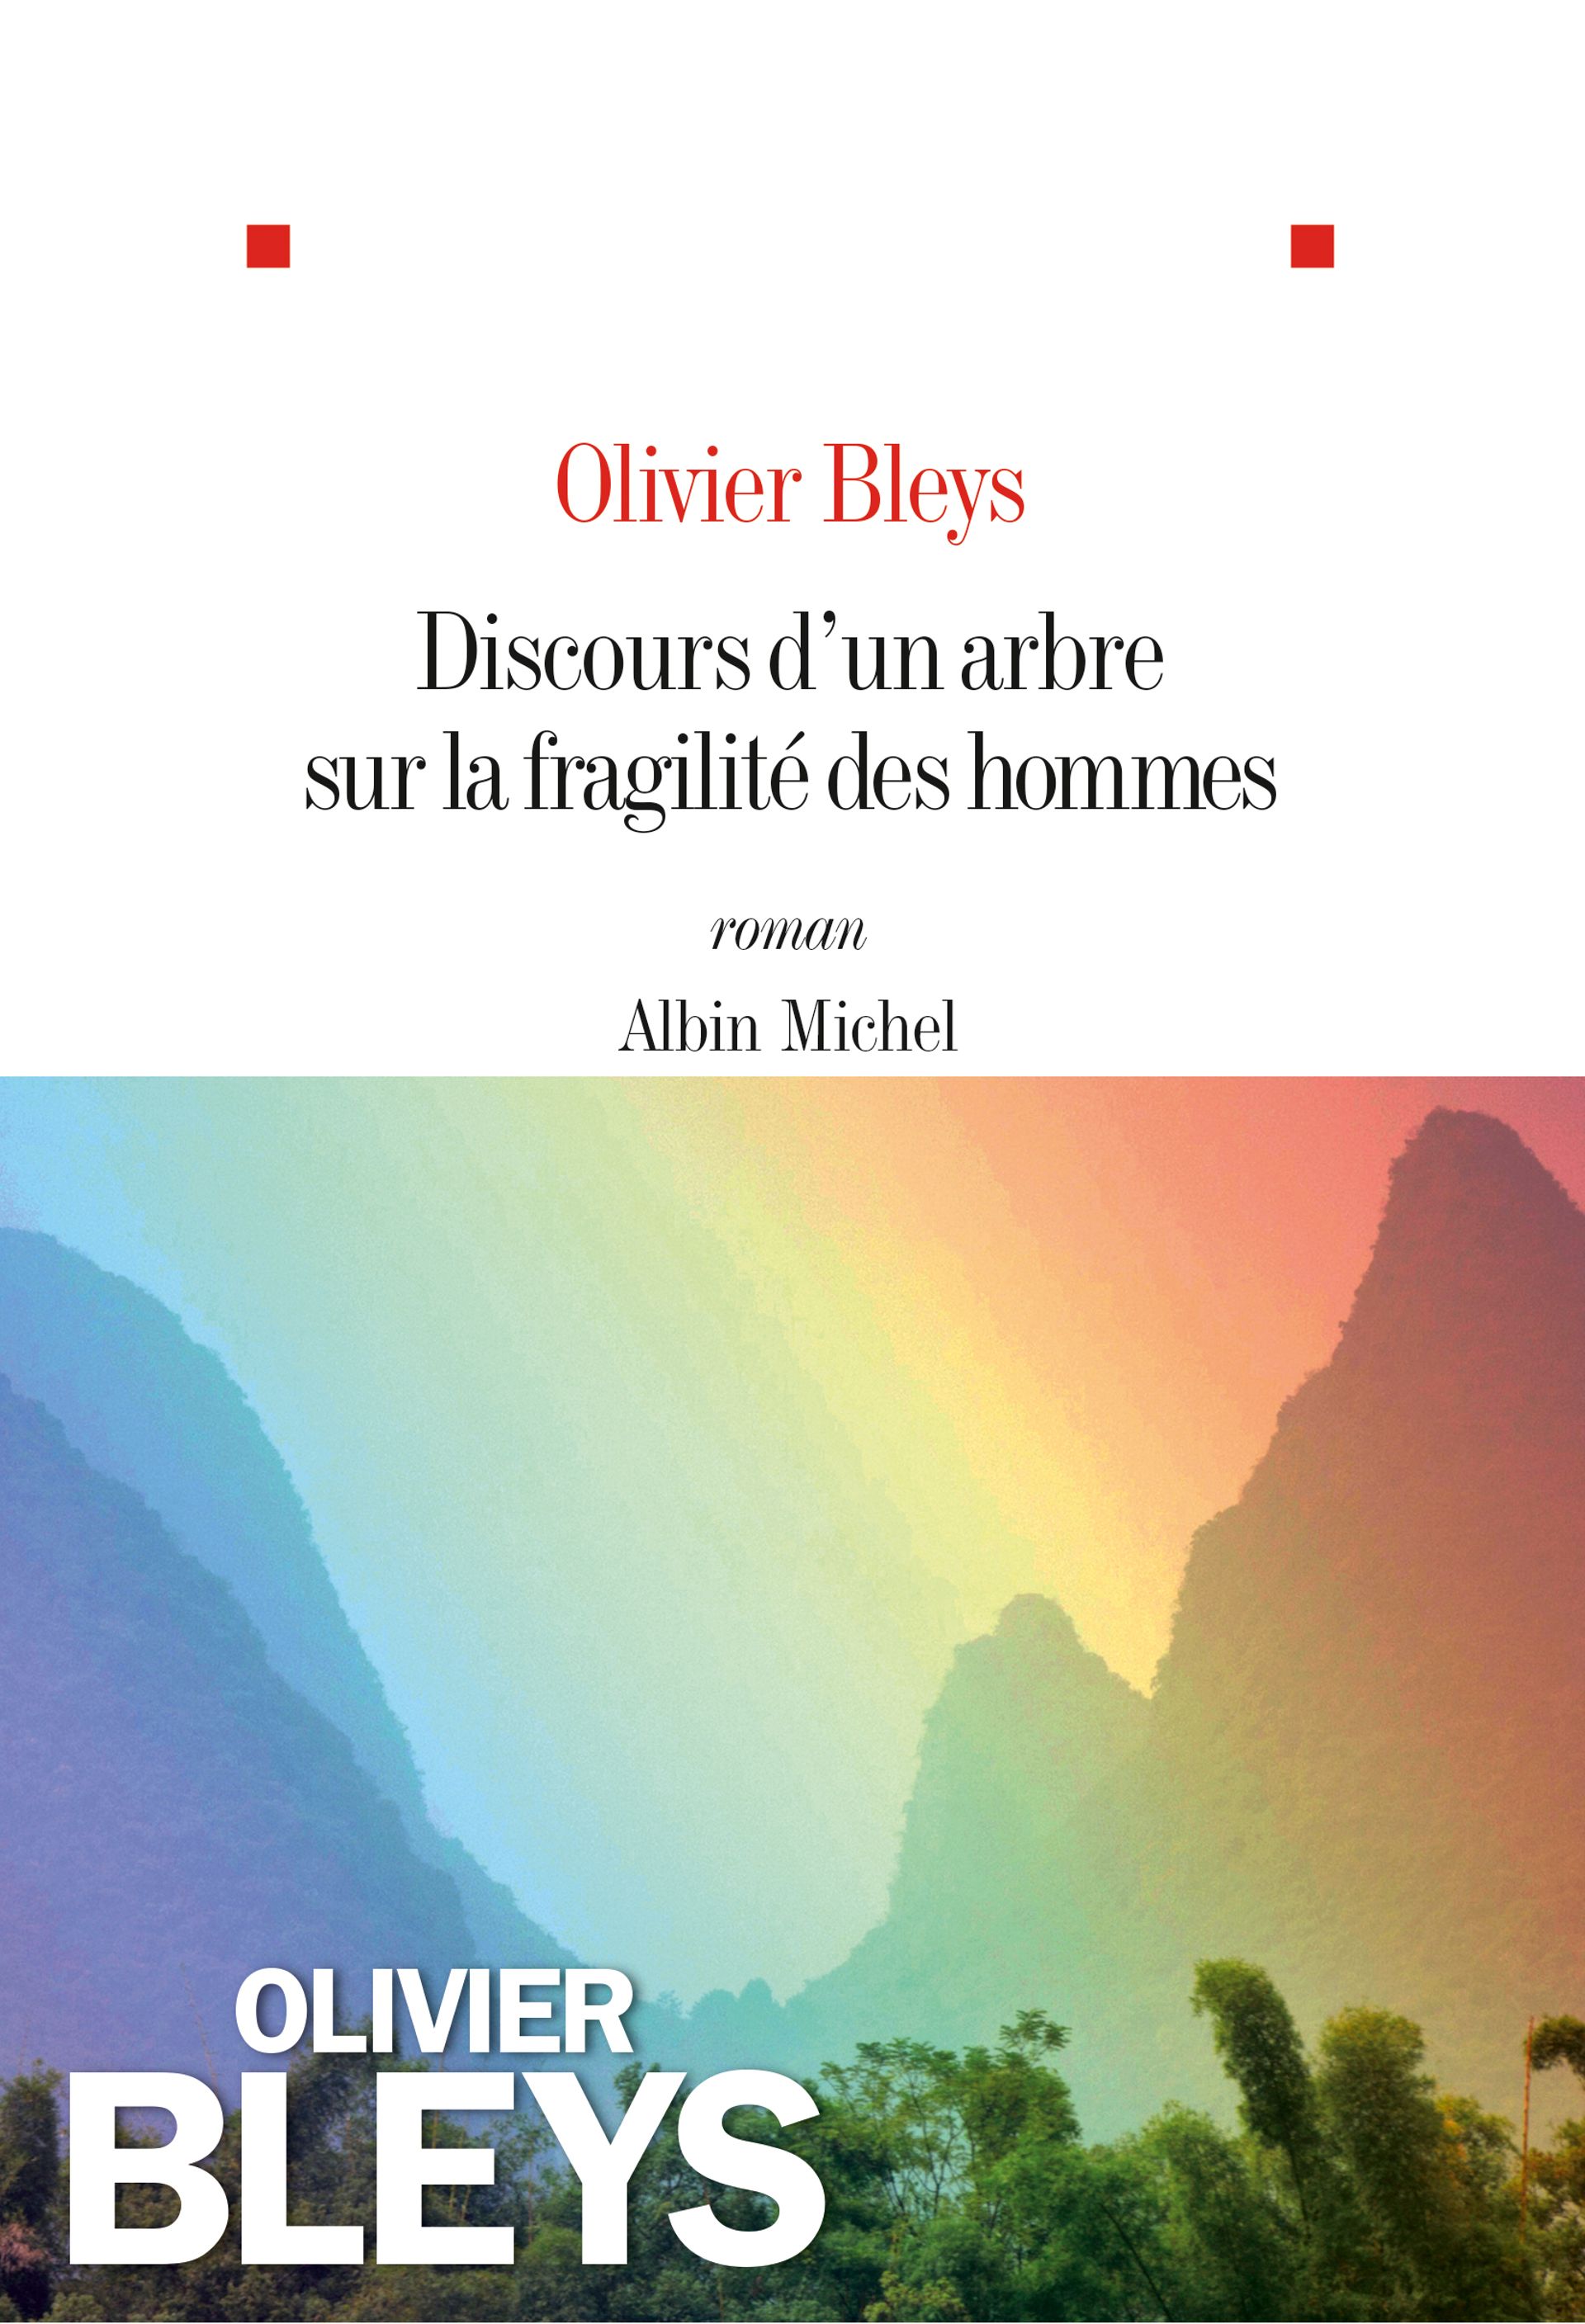  « Discours d’un arbre sur la fragilité des hommes » - Olivier Bleys - Ed Albin Michel